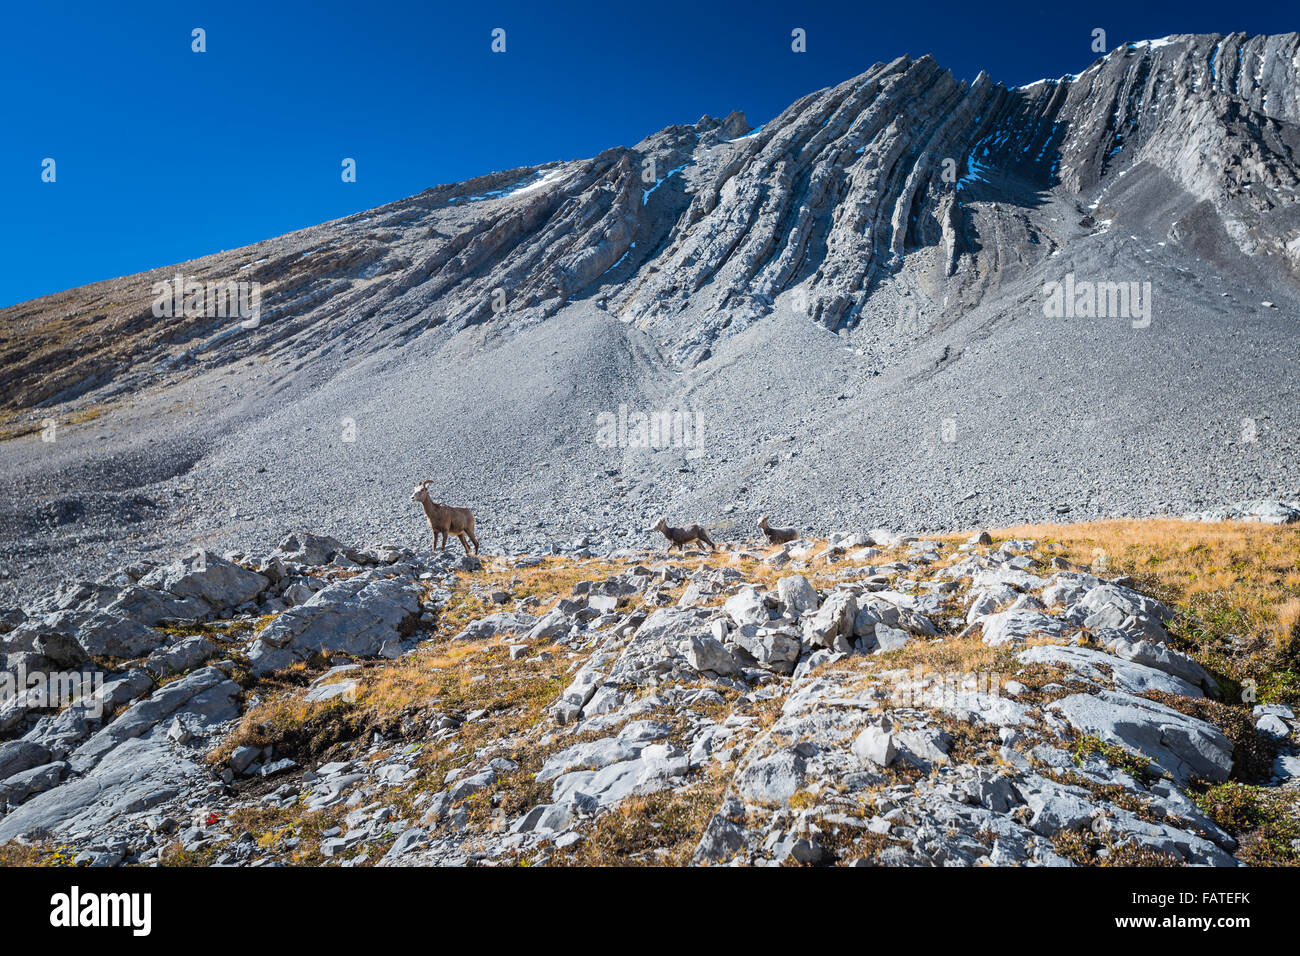 Wilde Herde von hoch oben in einem Berg Cirque große gehörnte Schafe. Kananaskis Country Alberta Kanada Stockfoto